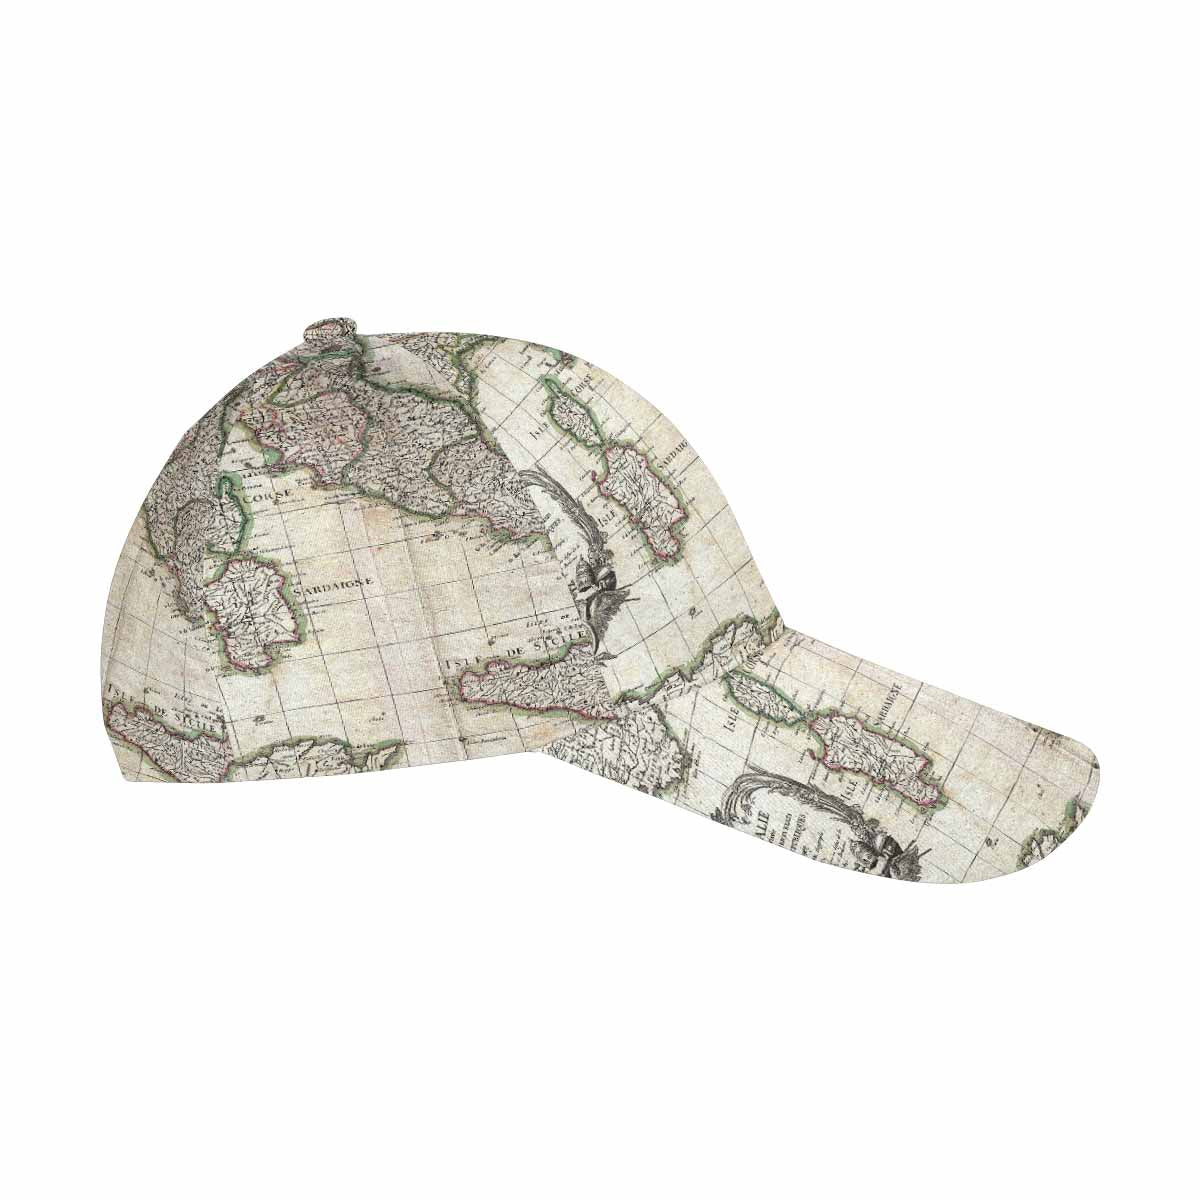 Antique Map design dad cap, trucker hat, Design 6